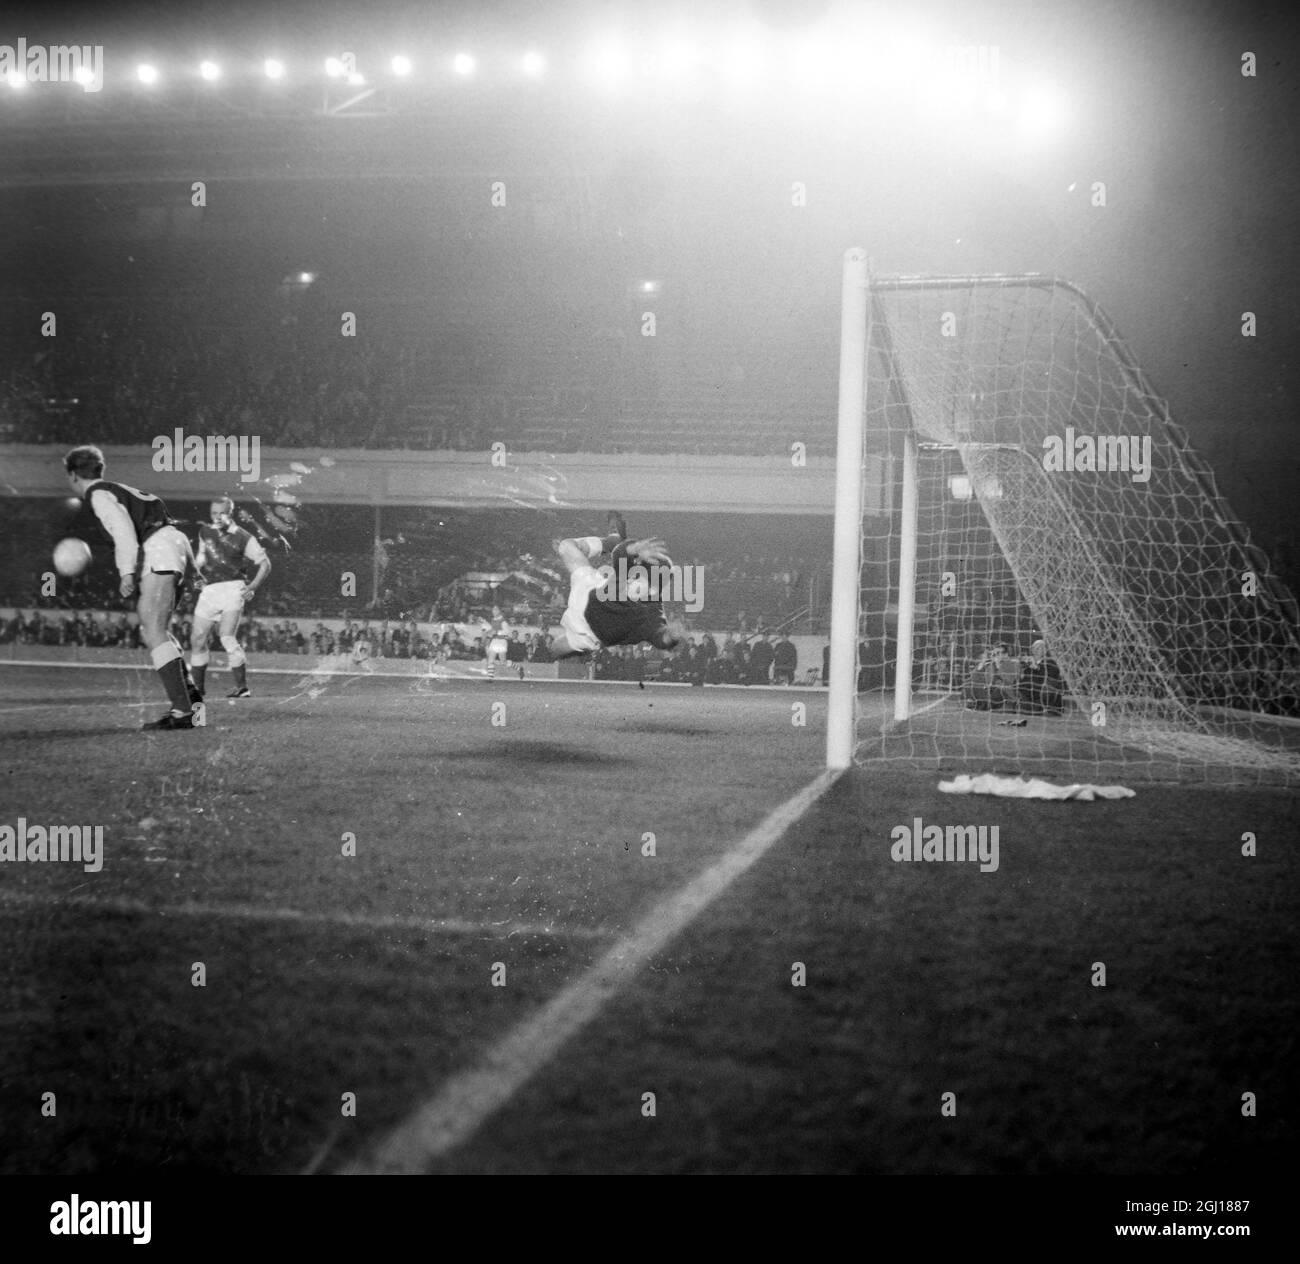 FUSSBALL INTER CITIES MESSEN CUP DENMARK V ARSENAL - HANSEN UND NIELSEN IN AKTION - ; 22. OKTOBER 1963 Stockfoto